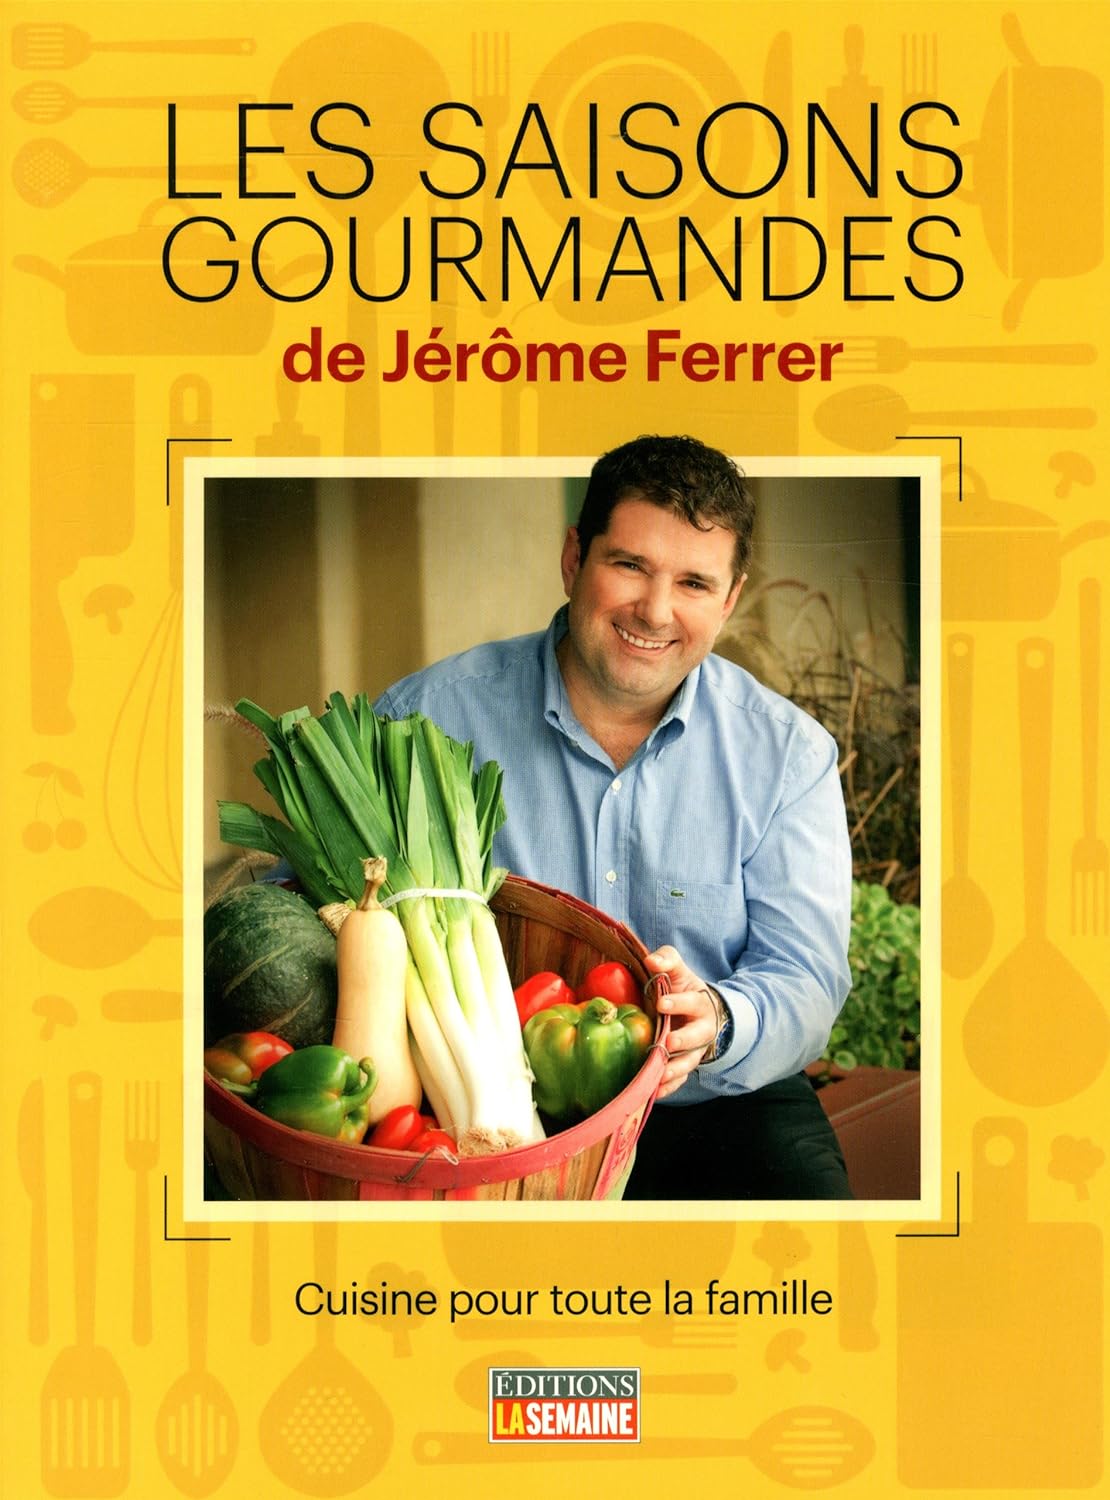 Les saisons gourmandes - Jérôme Ferrer